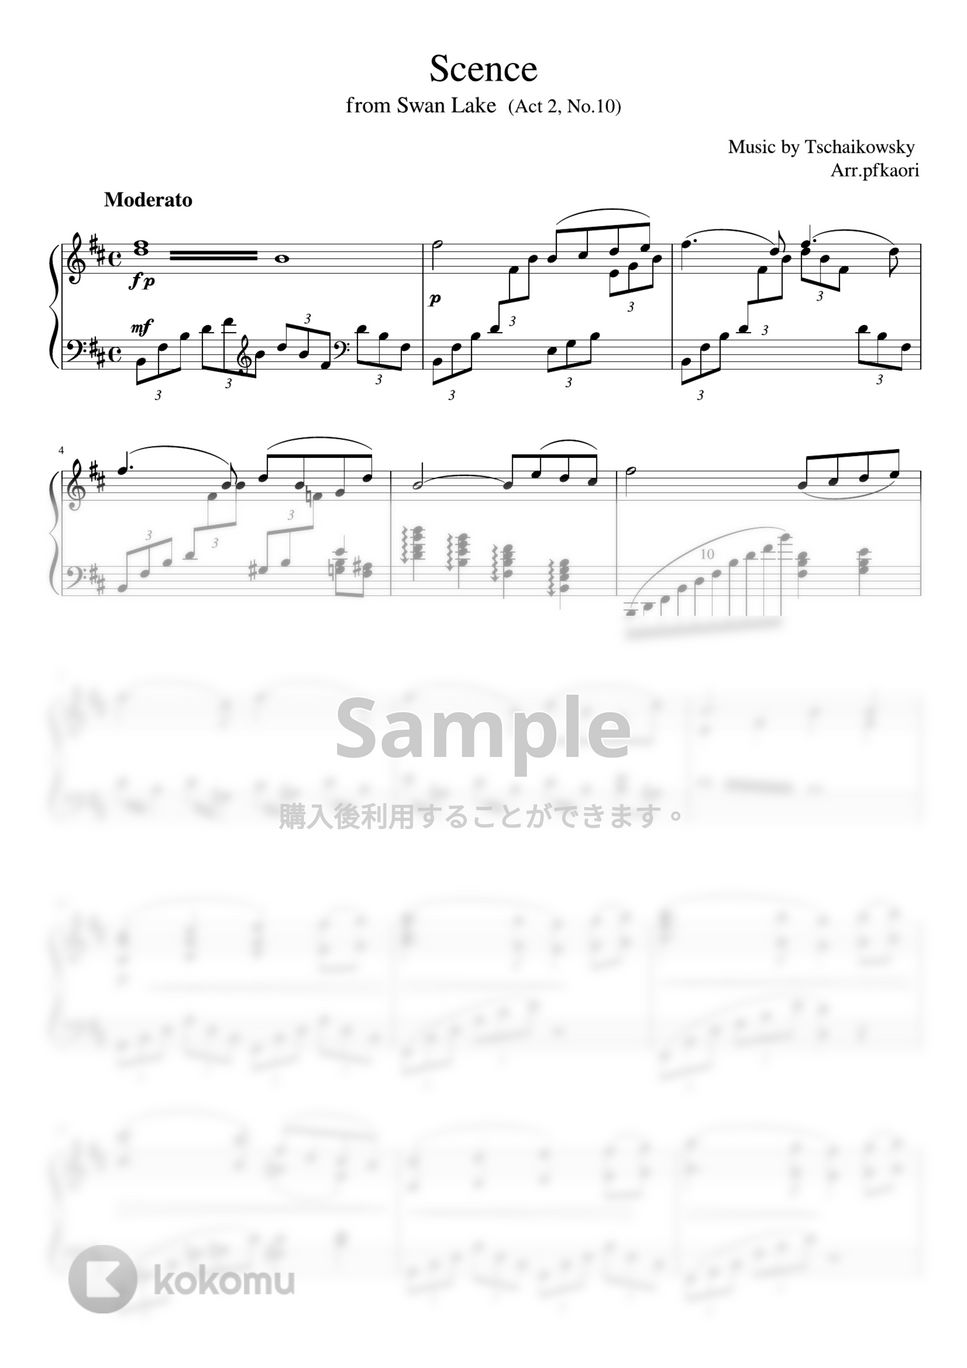 チャイコフスキー - 白鳥の湖より「情景」第2幕 (Bm・ピアノソロ上級) by pfkaori